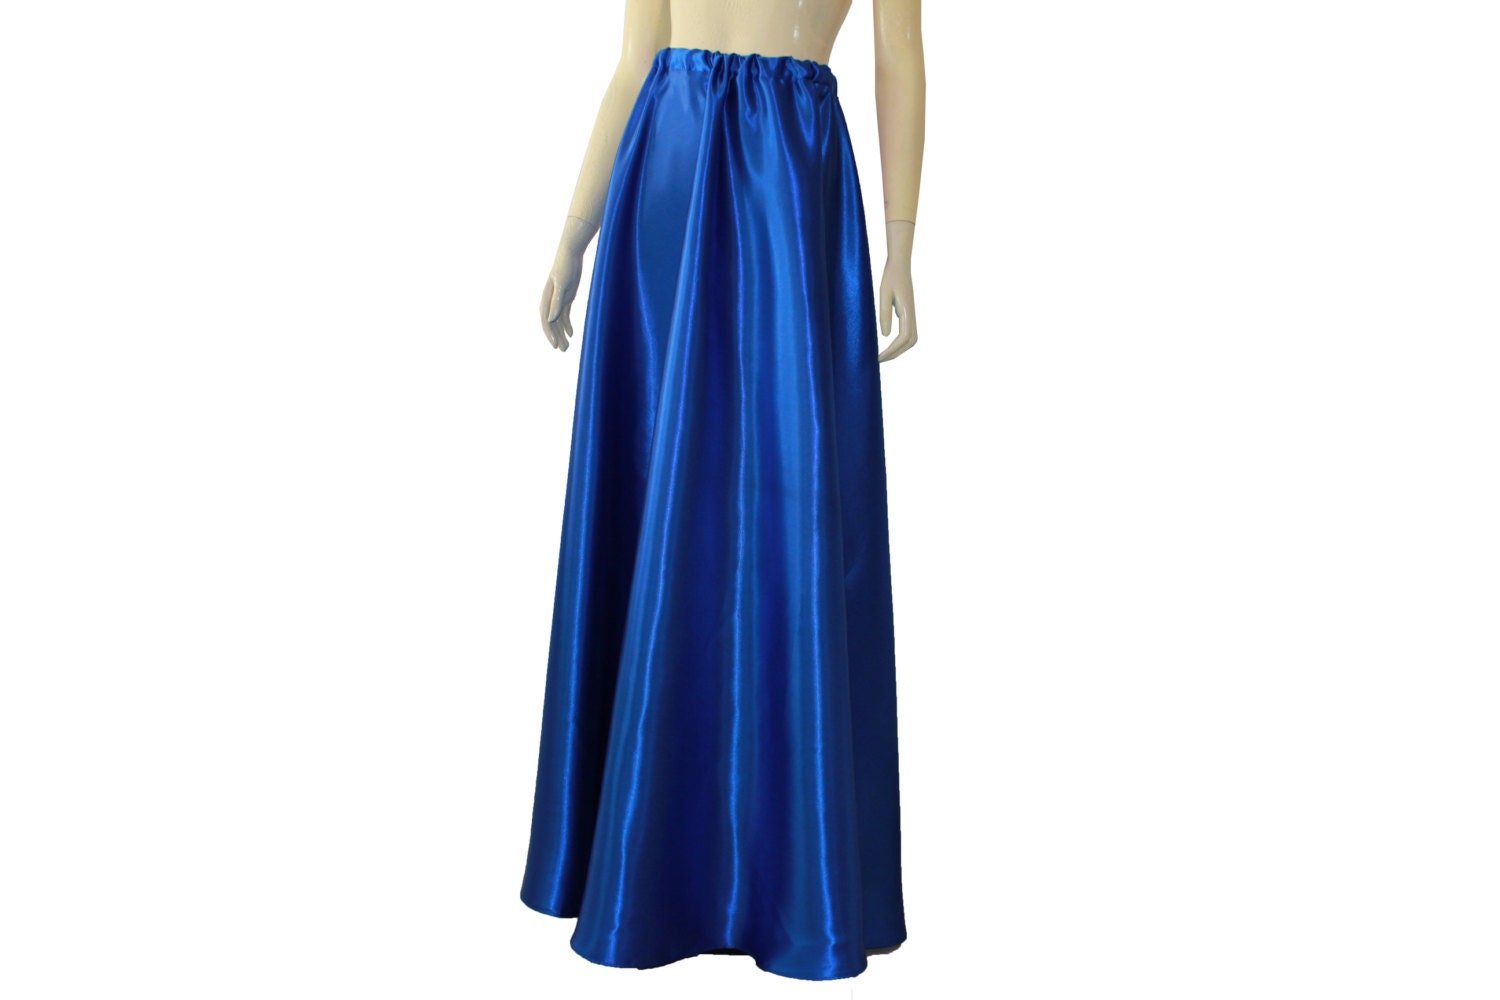 Long Satin Skirt Royal Blue Bridesmaid Maxi Formal Skirt